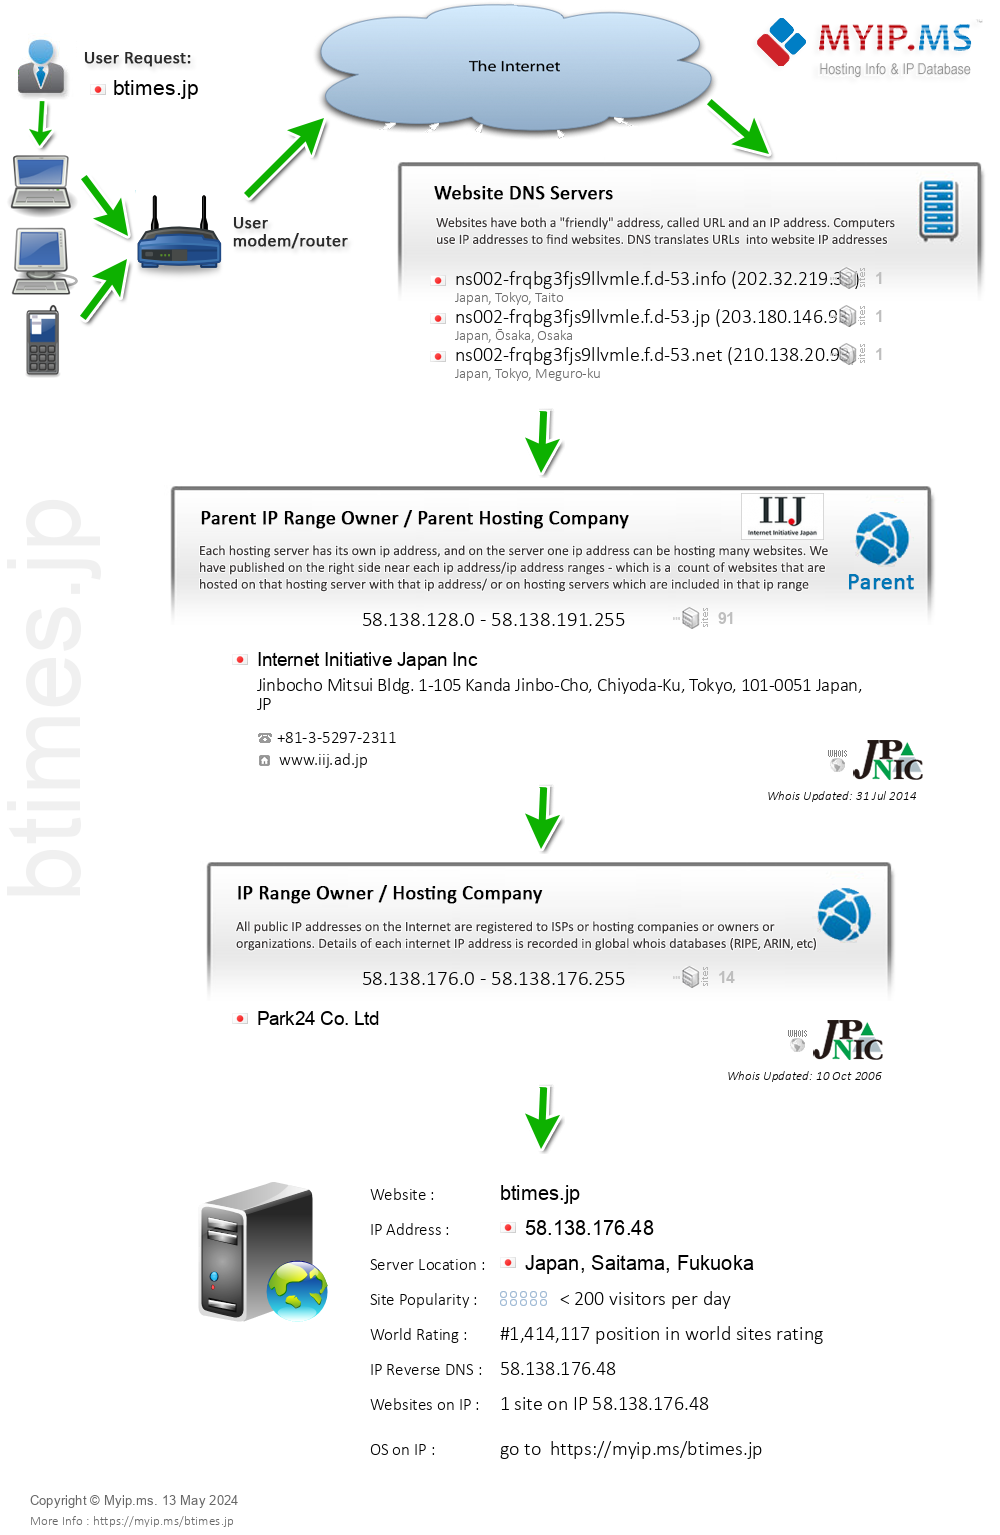 Btimes.jp - Website Hosting Visual IP Diagram